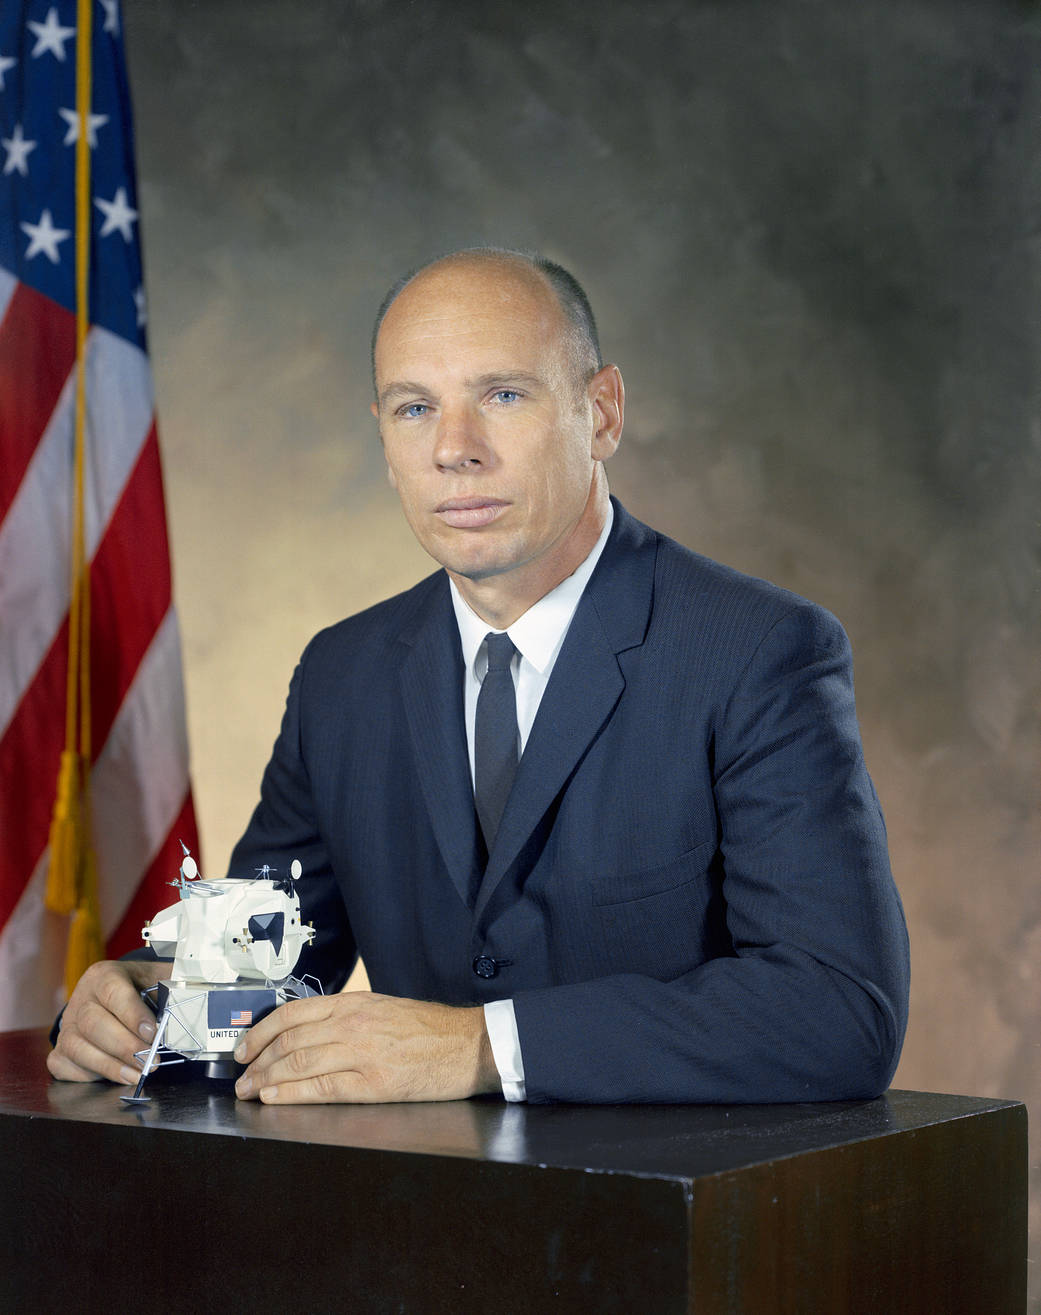 Portrait of astronaut William Thornton